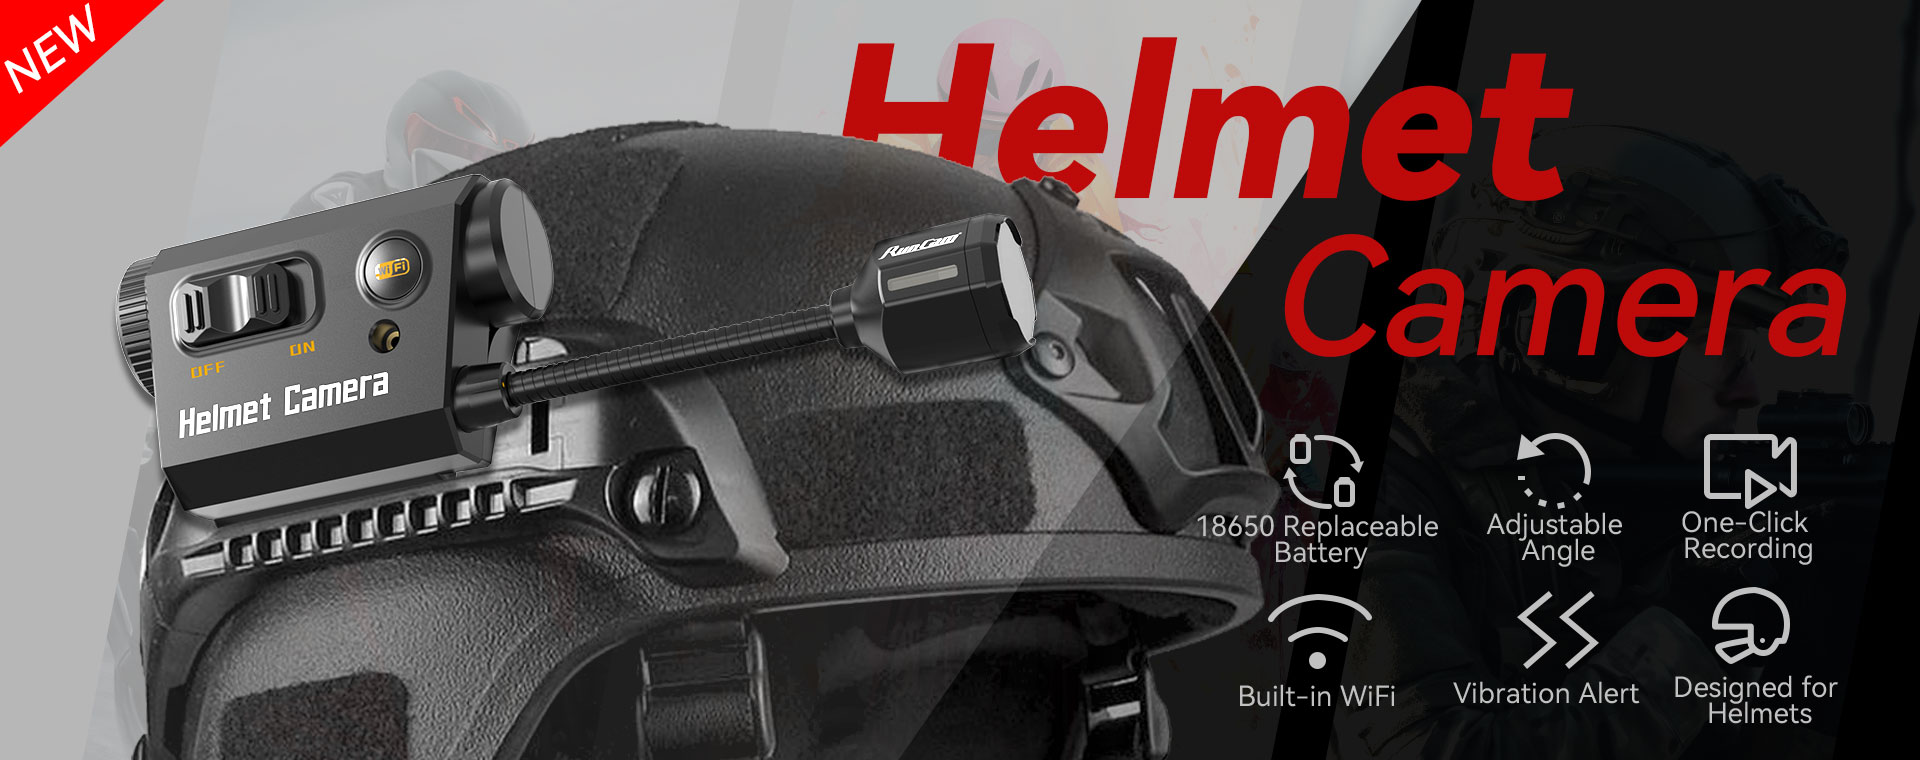 Helmet Camera Recorder Long Battery Life